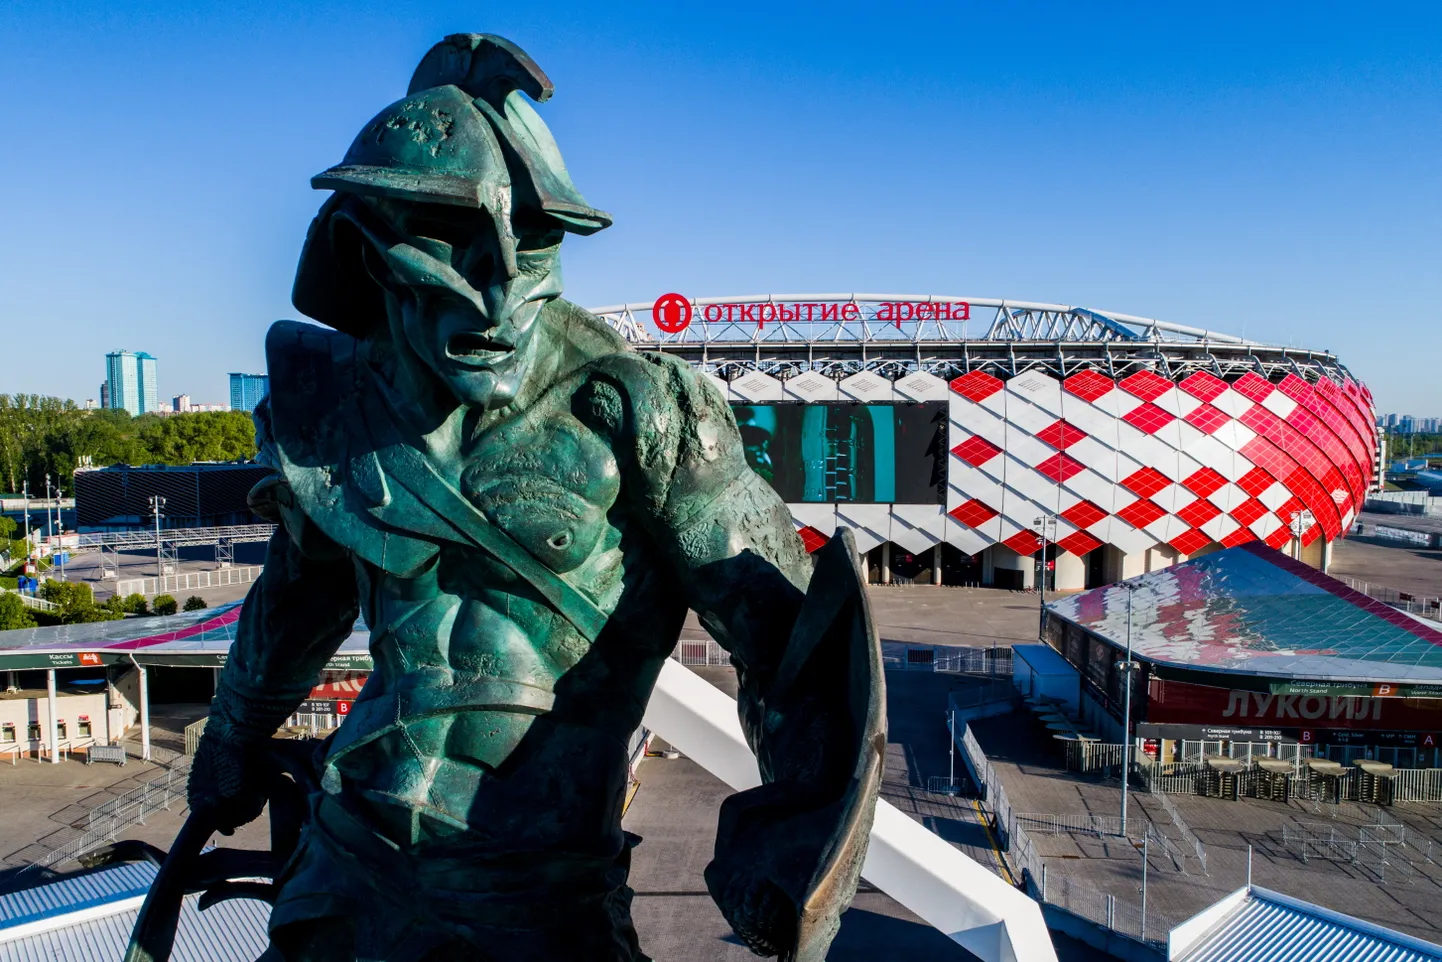 Moskva Spartaki staadioni juures tervitab jalgpallisõpru gladiaatori kuju. Erinevateks ootamatusteks tuleb vutisõpradel end valmis panna mujalgi.